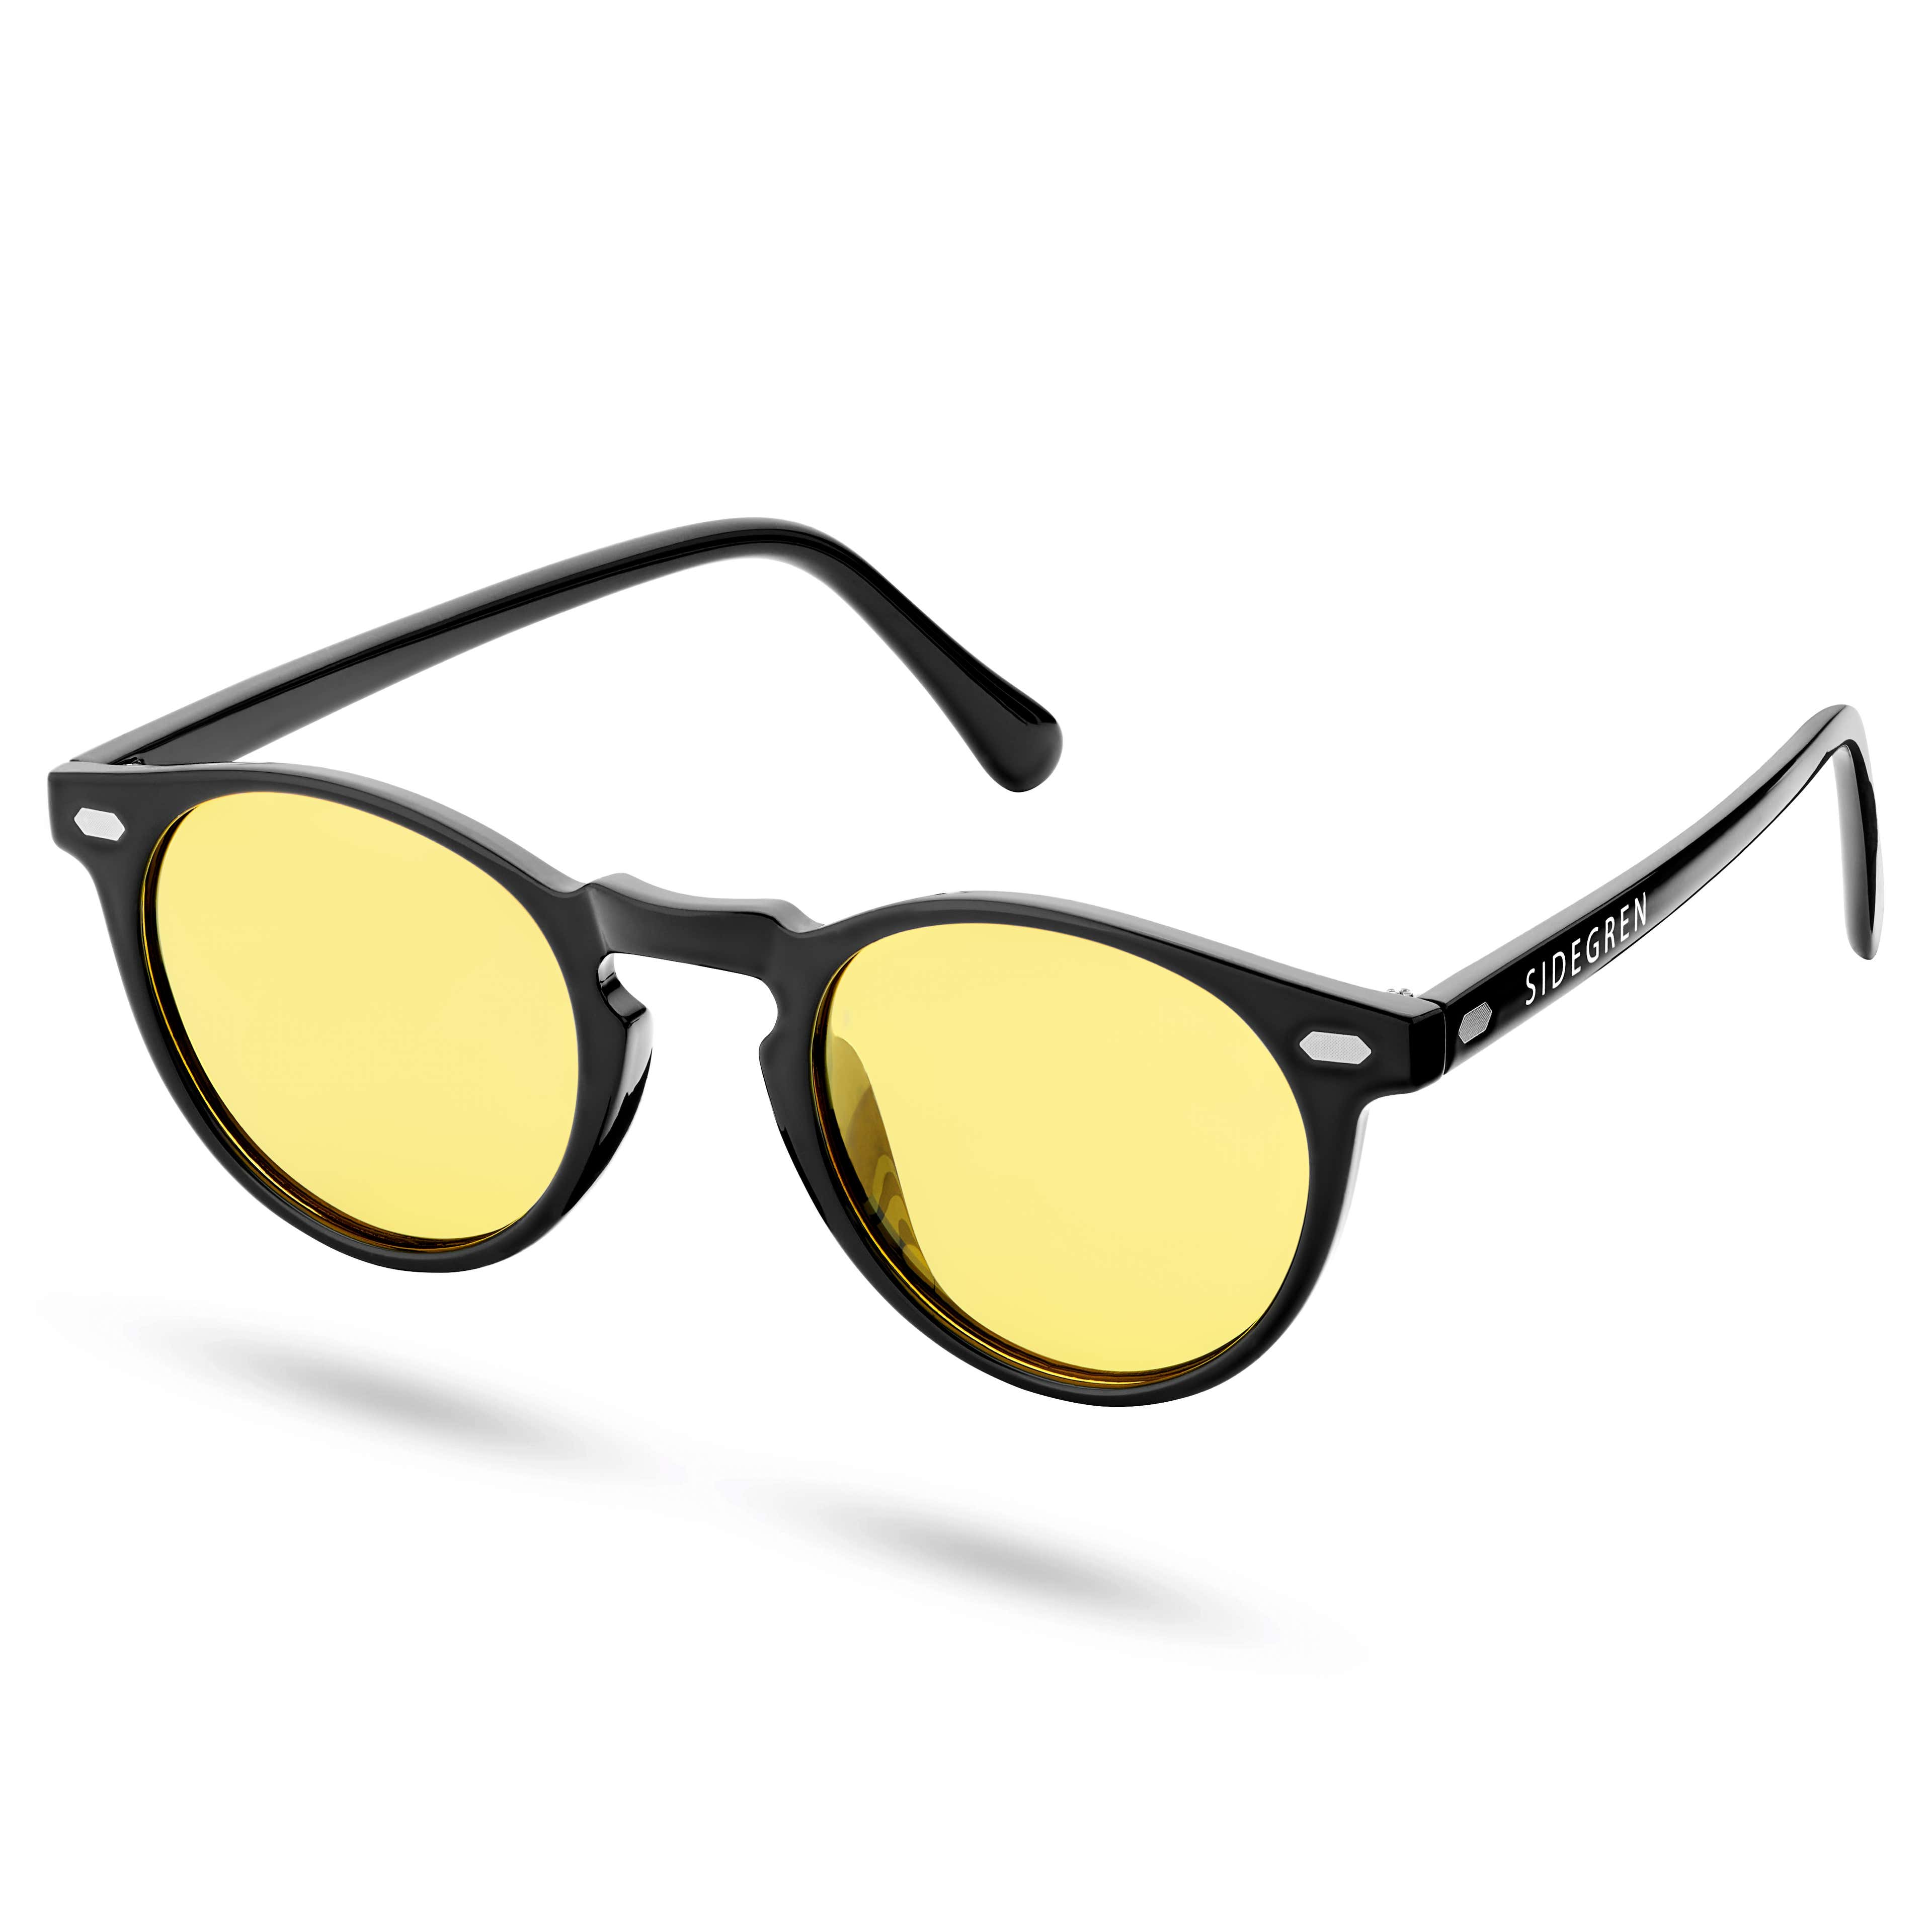 Kulaté retro polarizační sluneční brýle v černé a žluté barvě